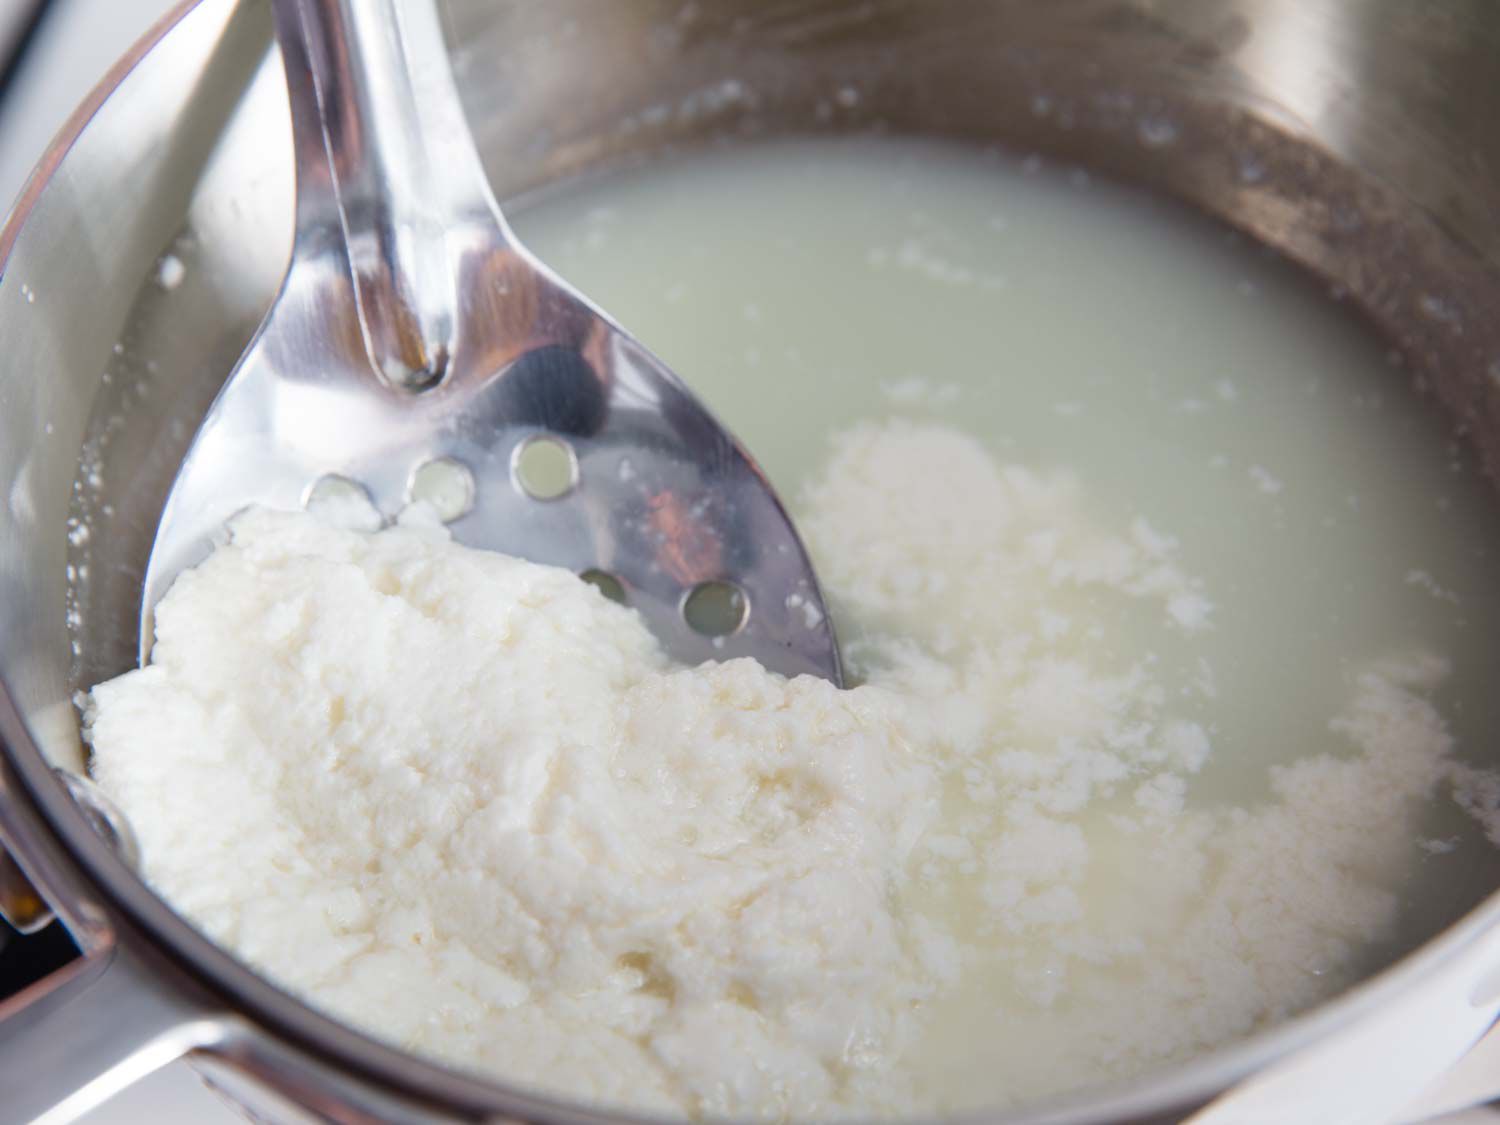 用开槽的勺子从炖锅中取出自制奶酪